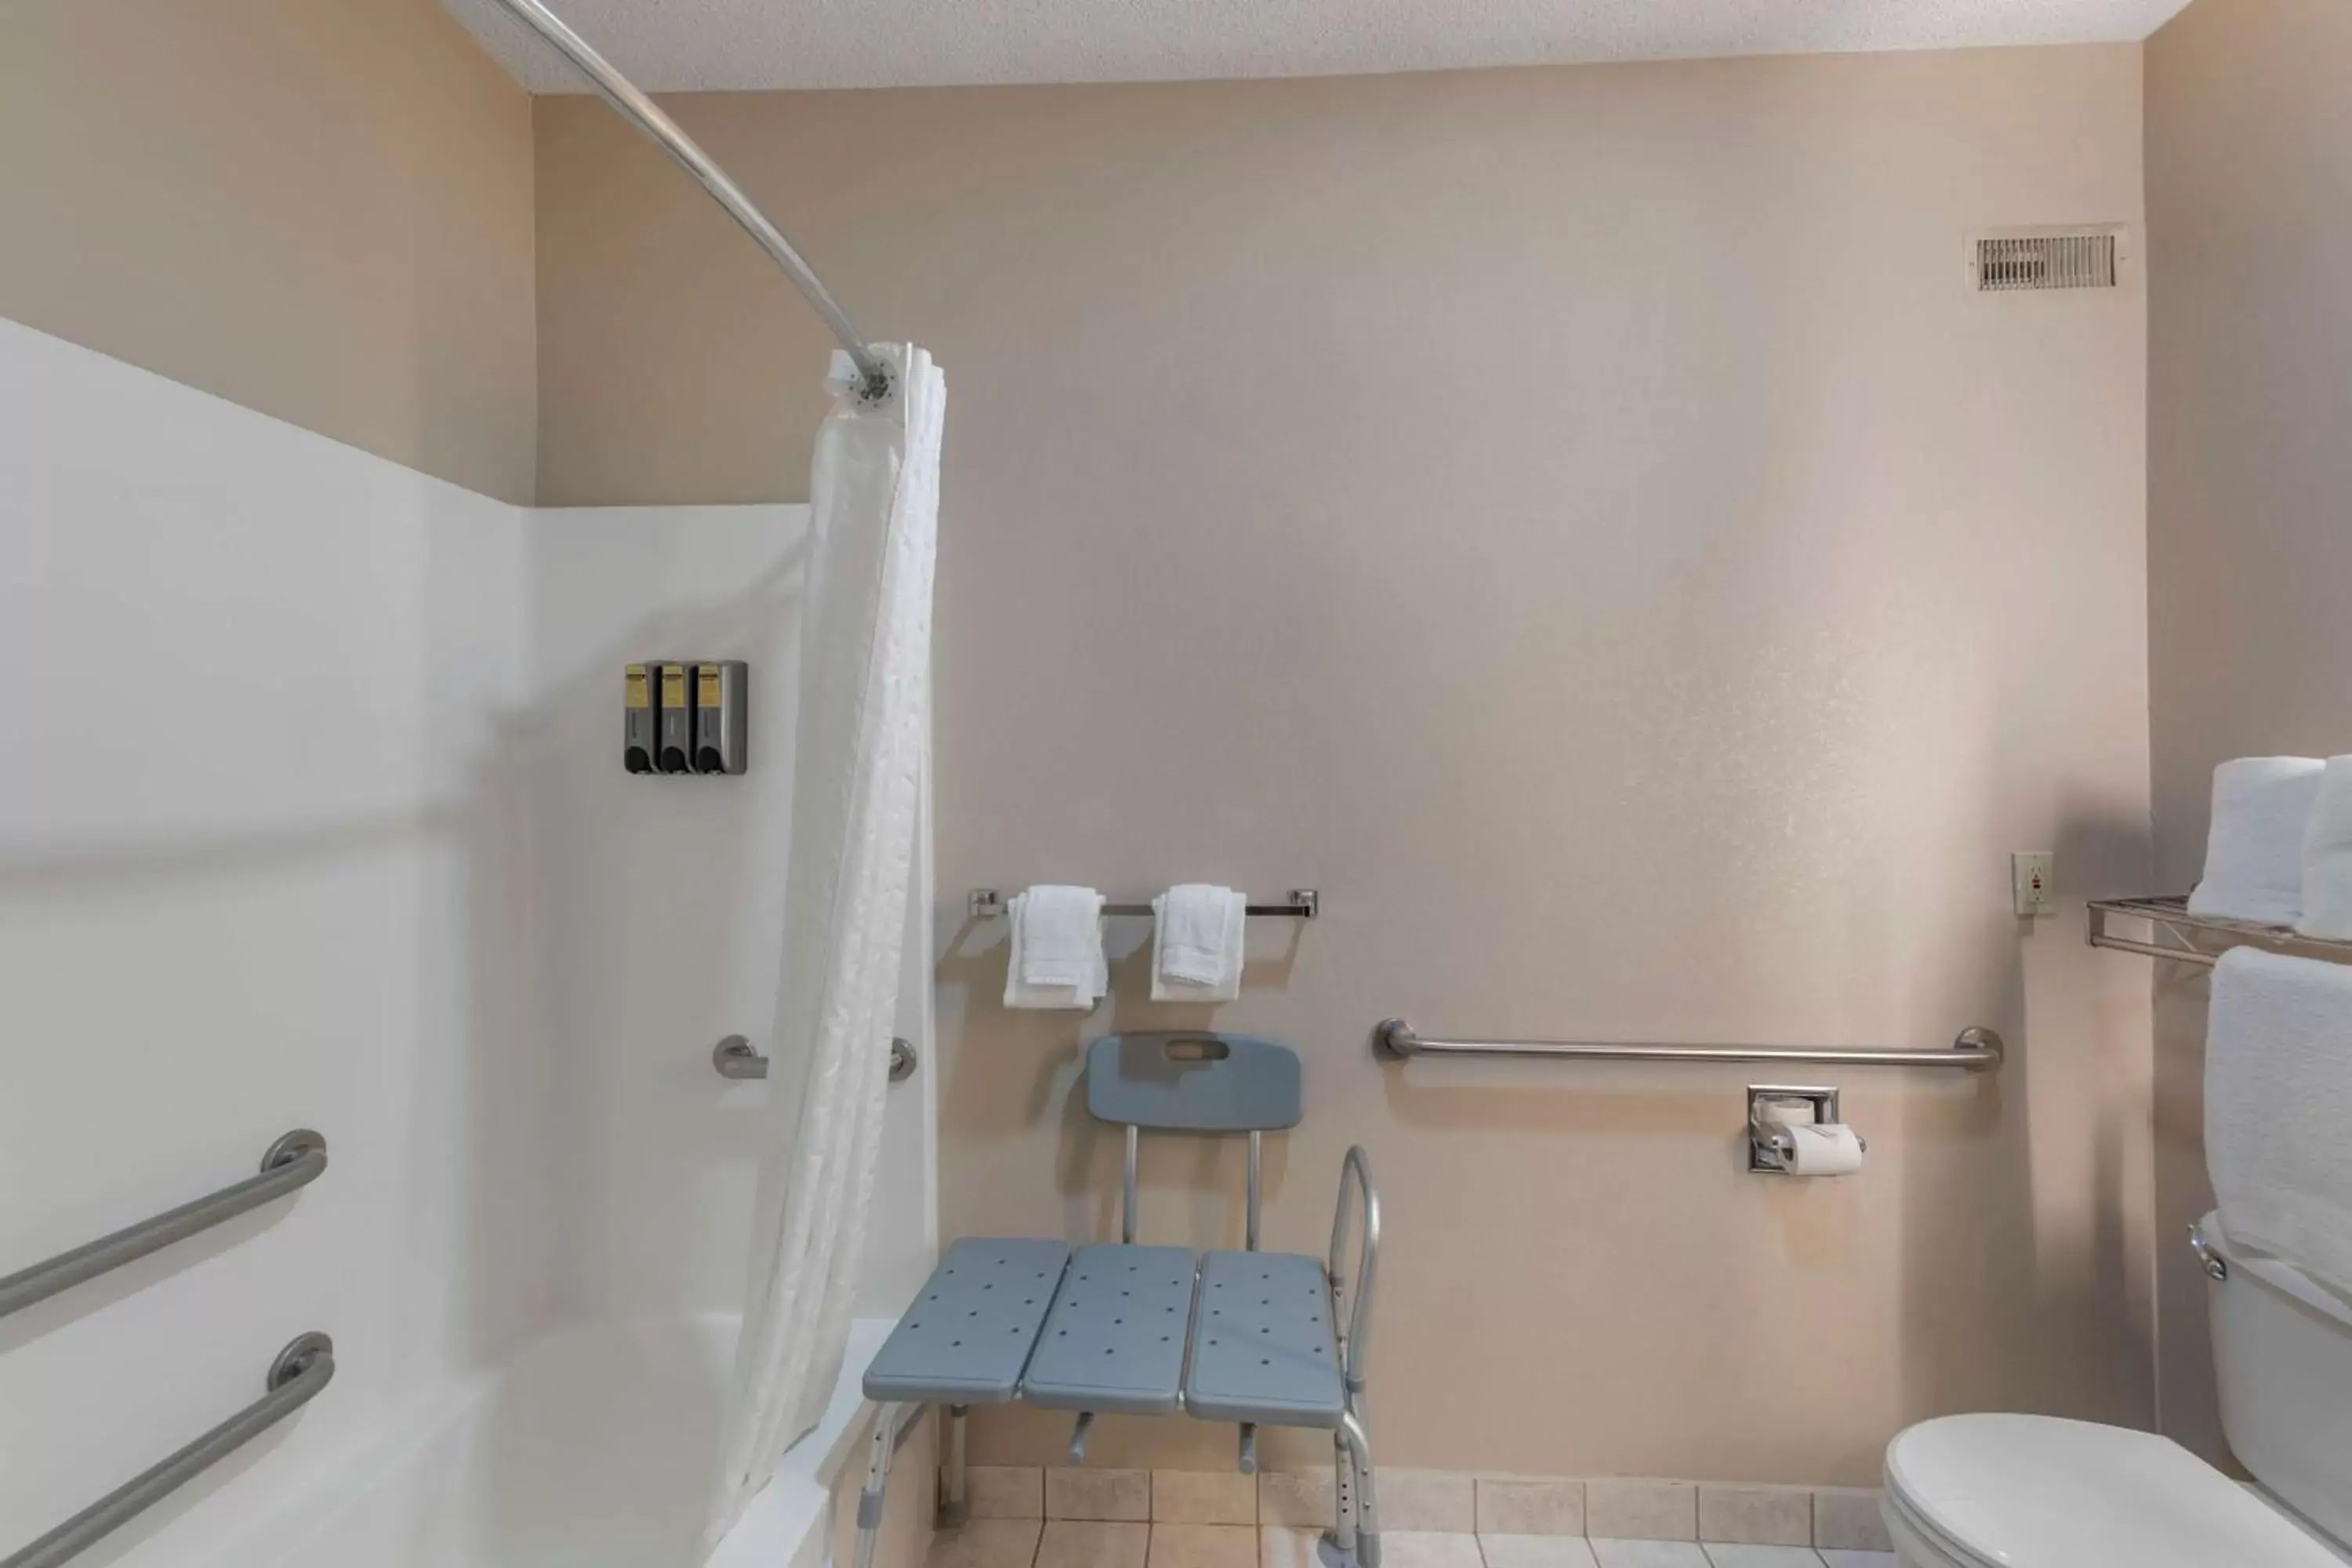 Bathroom in Best Western Plus Russellville Hotel & Suites